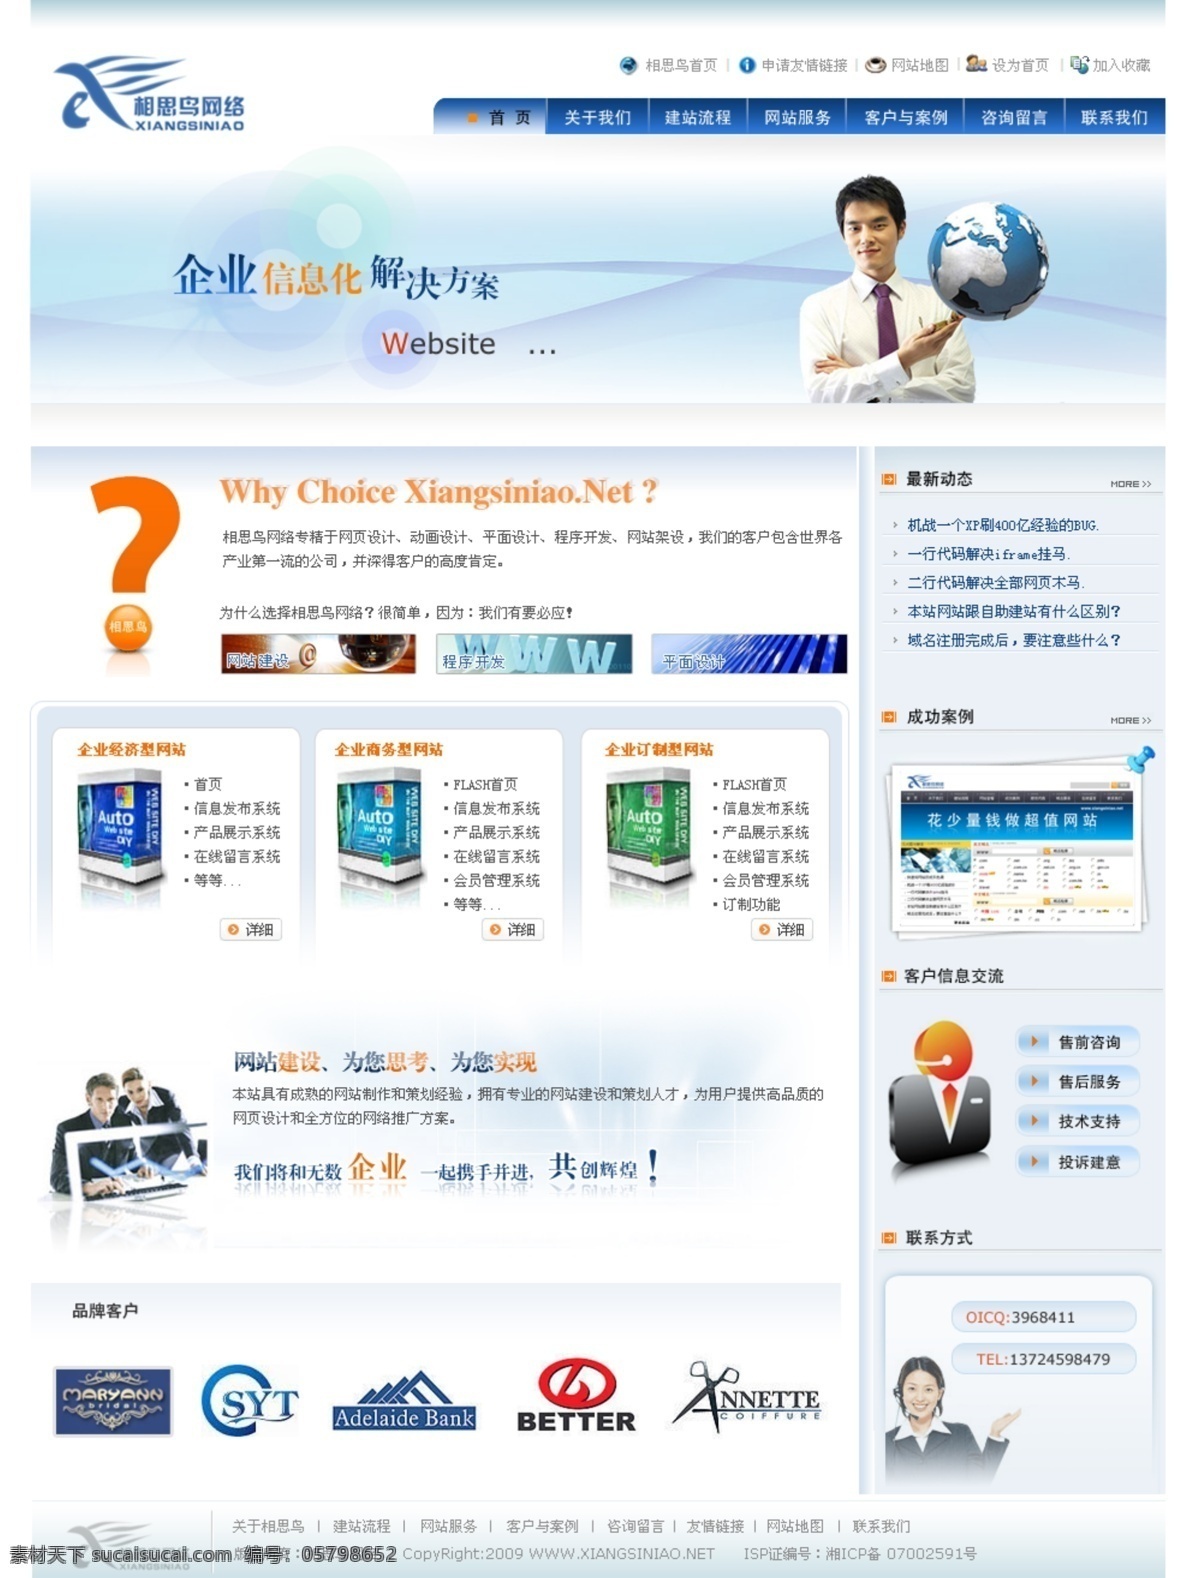 网络 科技 公司 网页模板 地球 中国风格 蓝色色调 网页素材